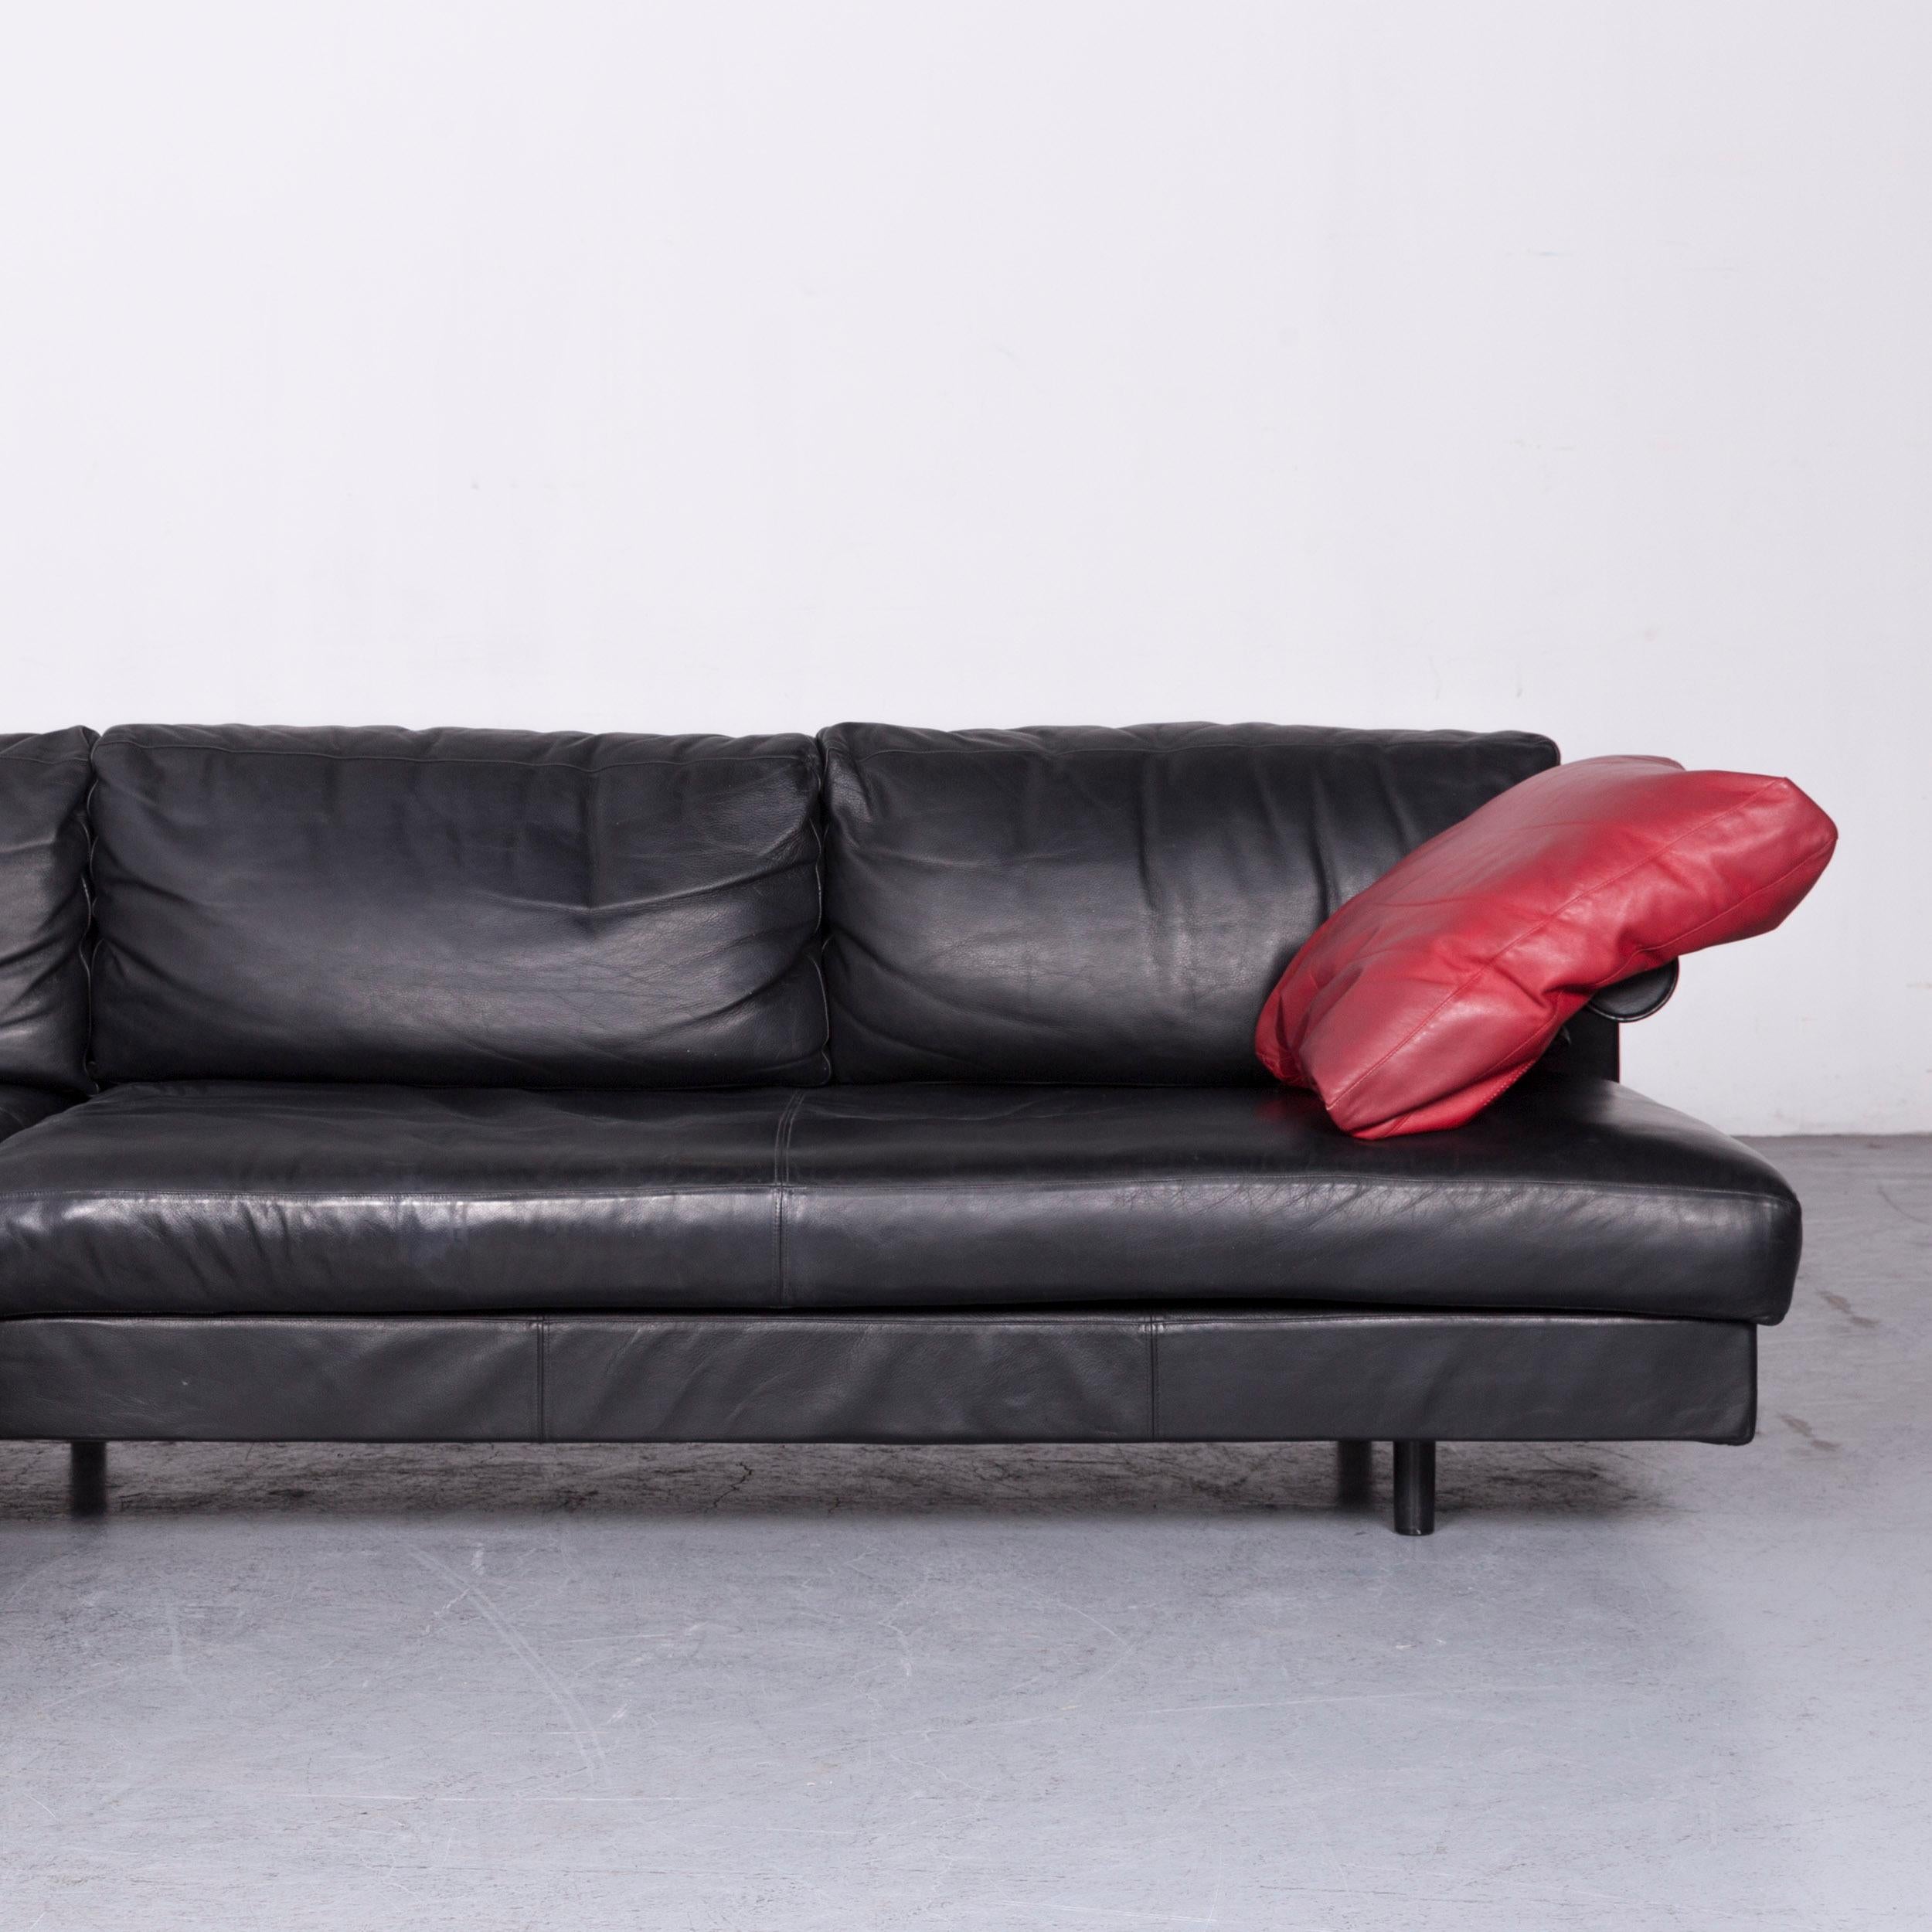 B & B Italia Designer Leather Corner Sofa Black Genuine Leather Sofa Couch In Good Condition For Sale In Cologne, DE